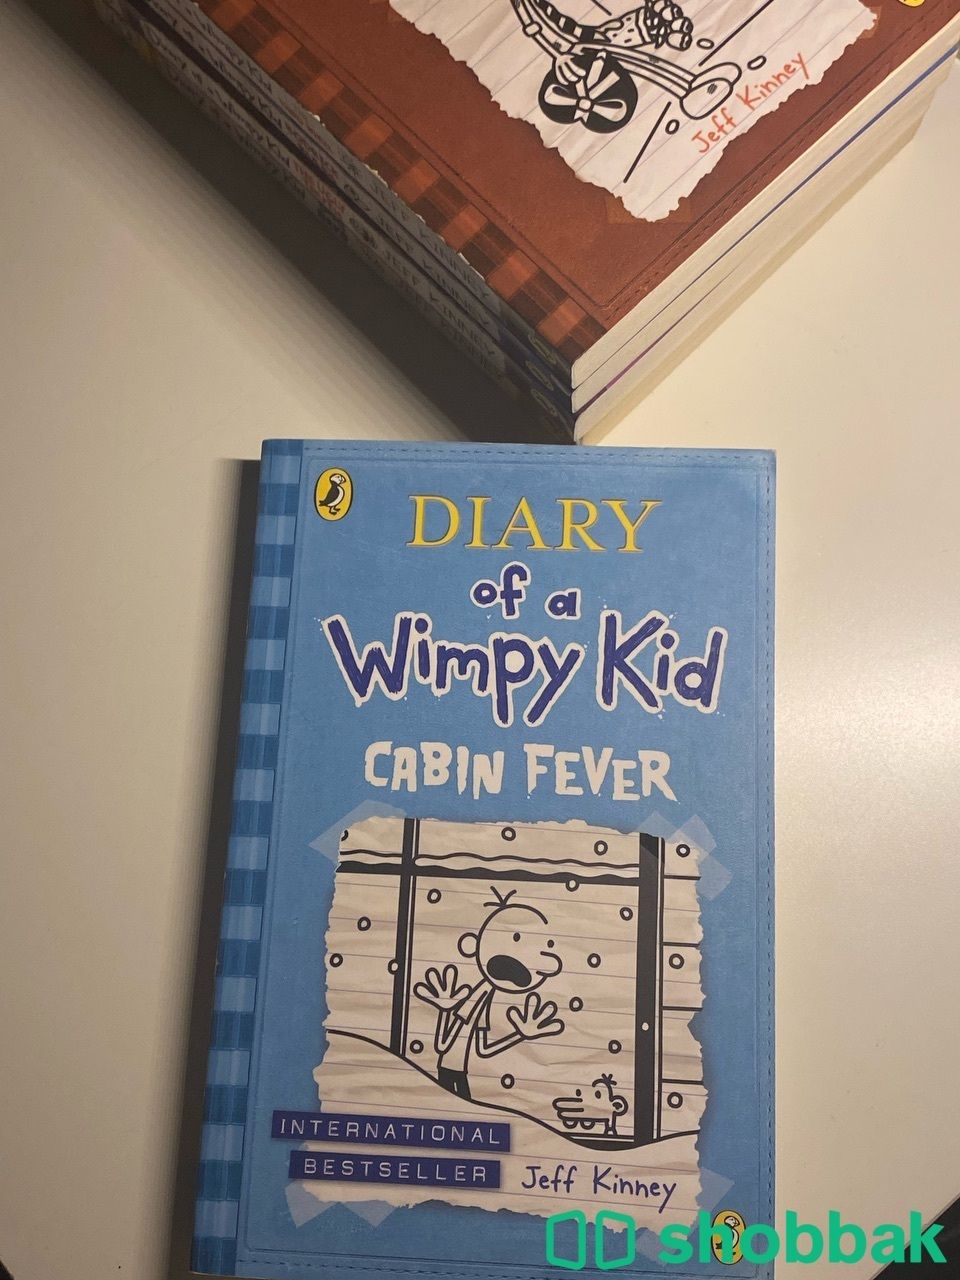 كتب Diary of a Wimpy Kid Shobbak Saudi Arabia